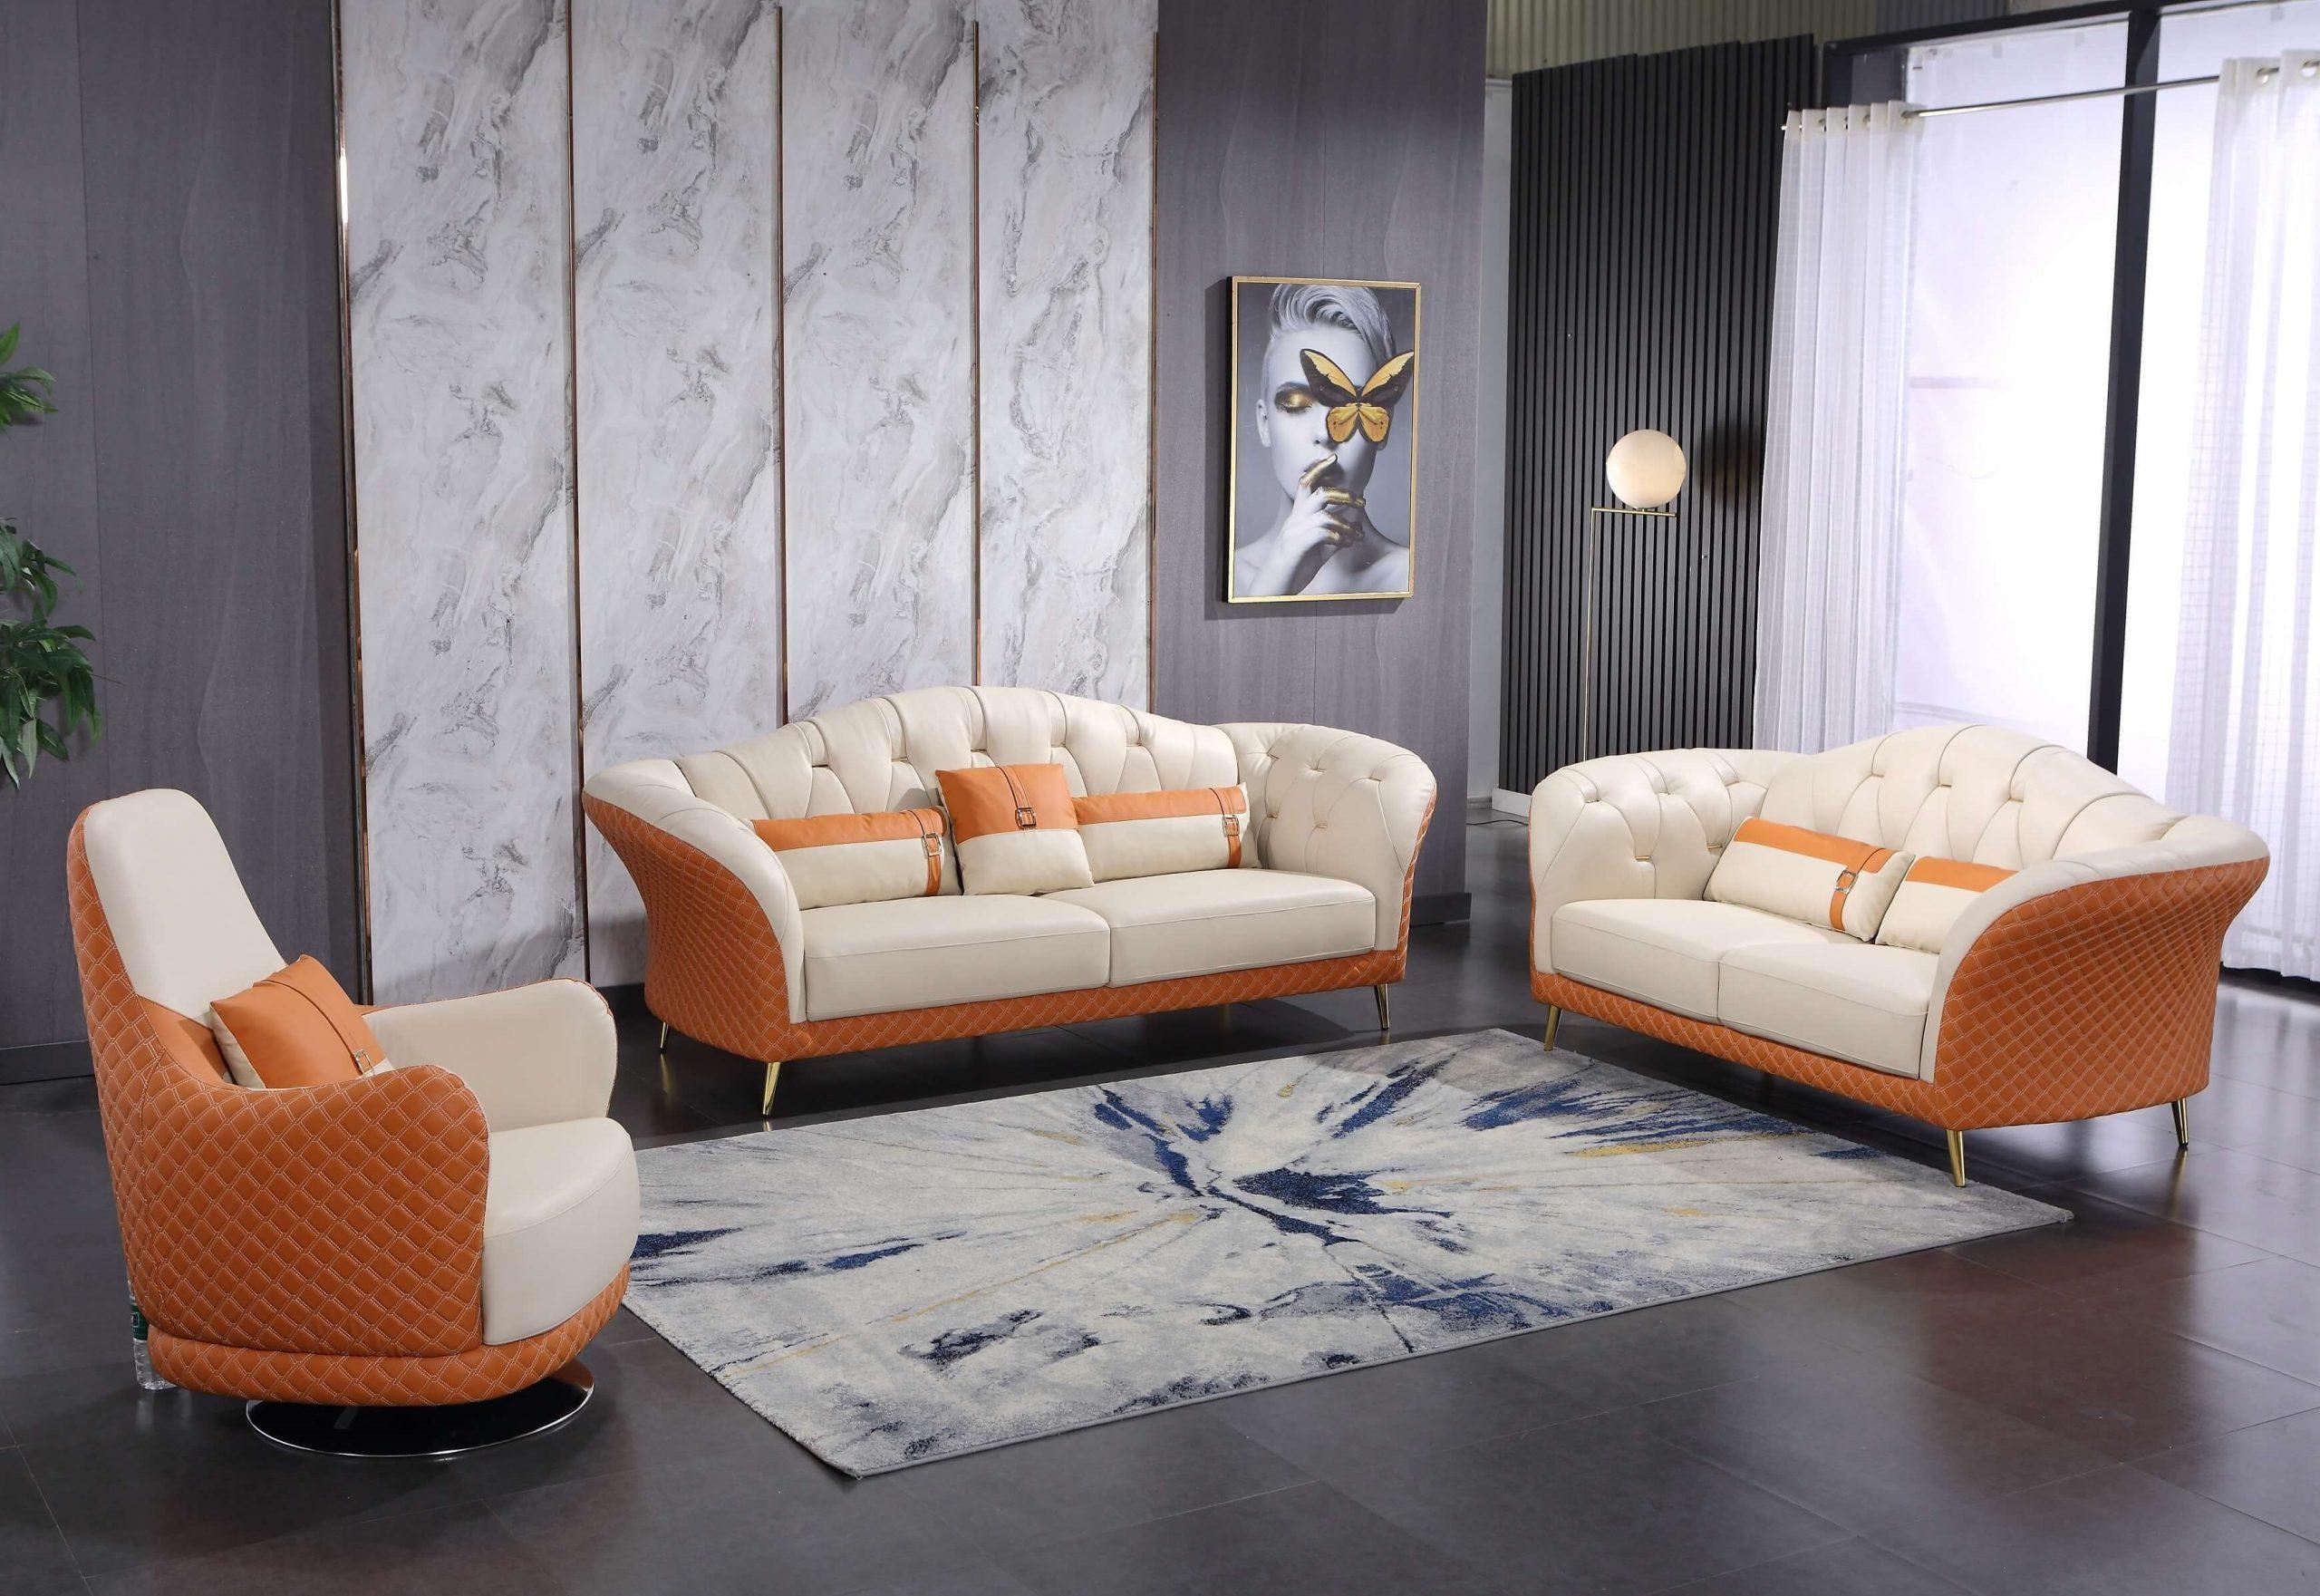 

                    
EUROPEAN FURNITURE AMALIA Sofa Off-White/Orange Italian Leather Purchase 
